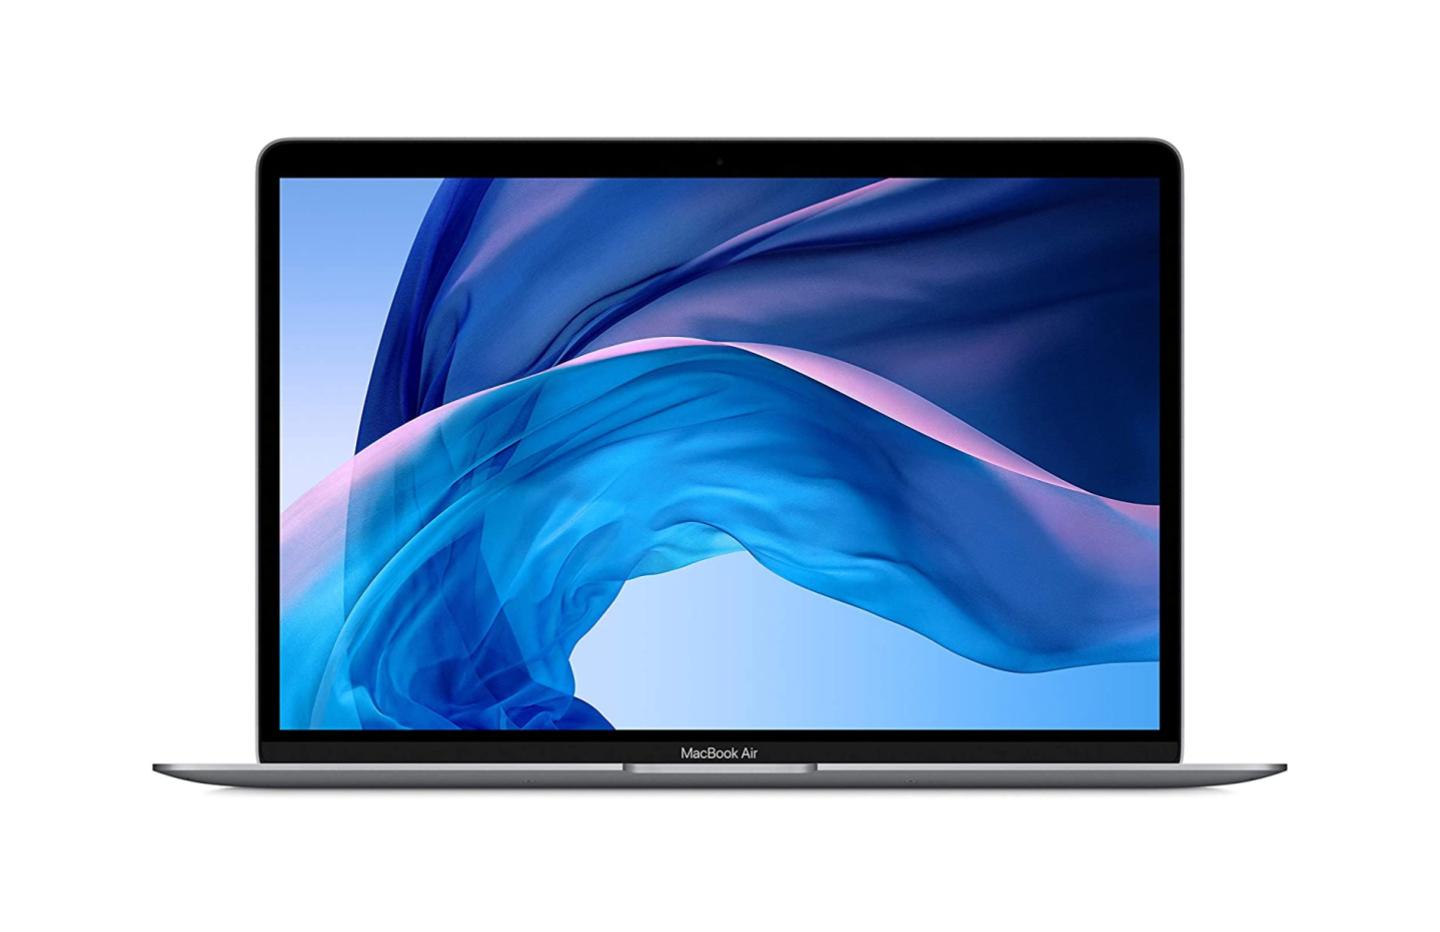 Soldes 2021 : baisse de prix sur le Macbook Pro M1 512 Go 